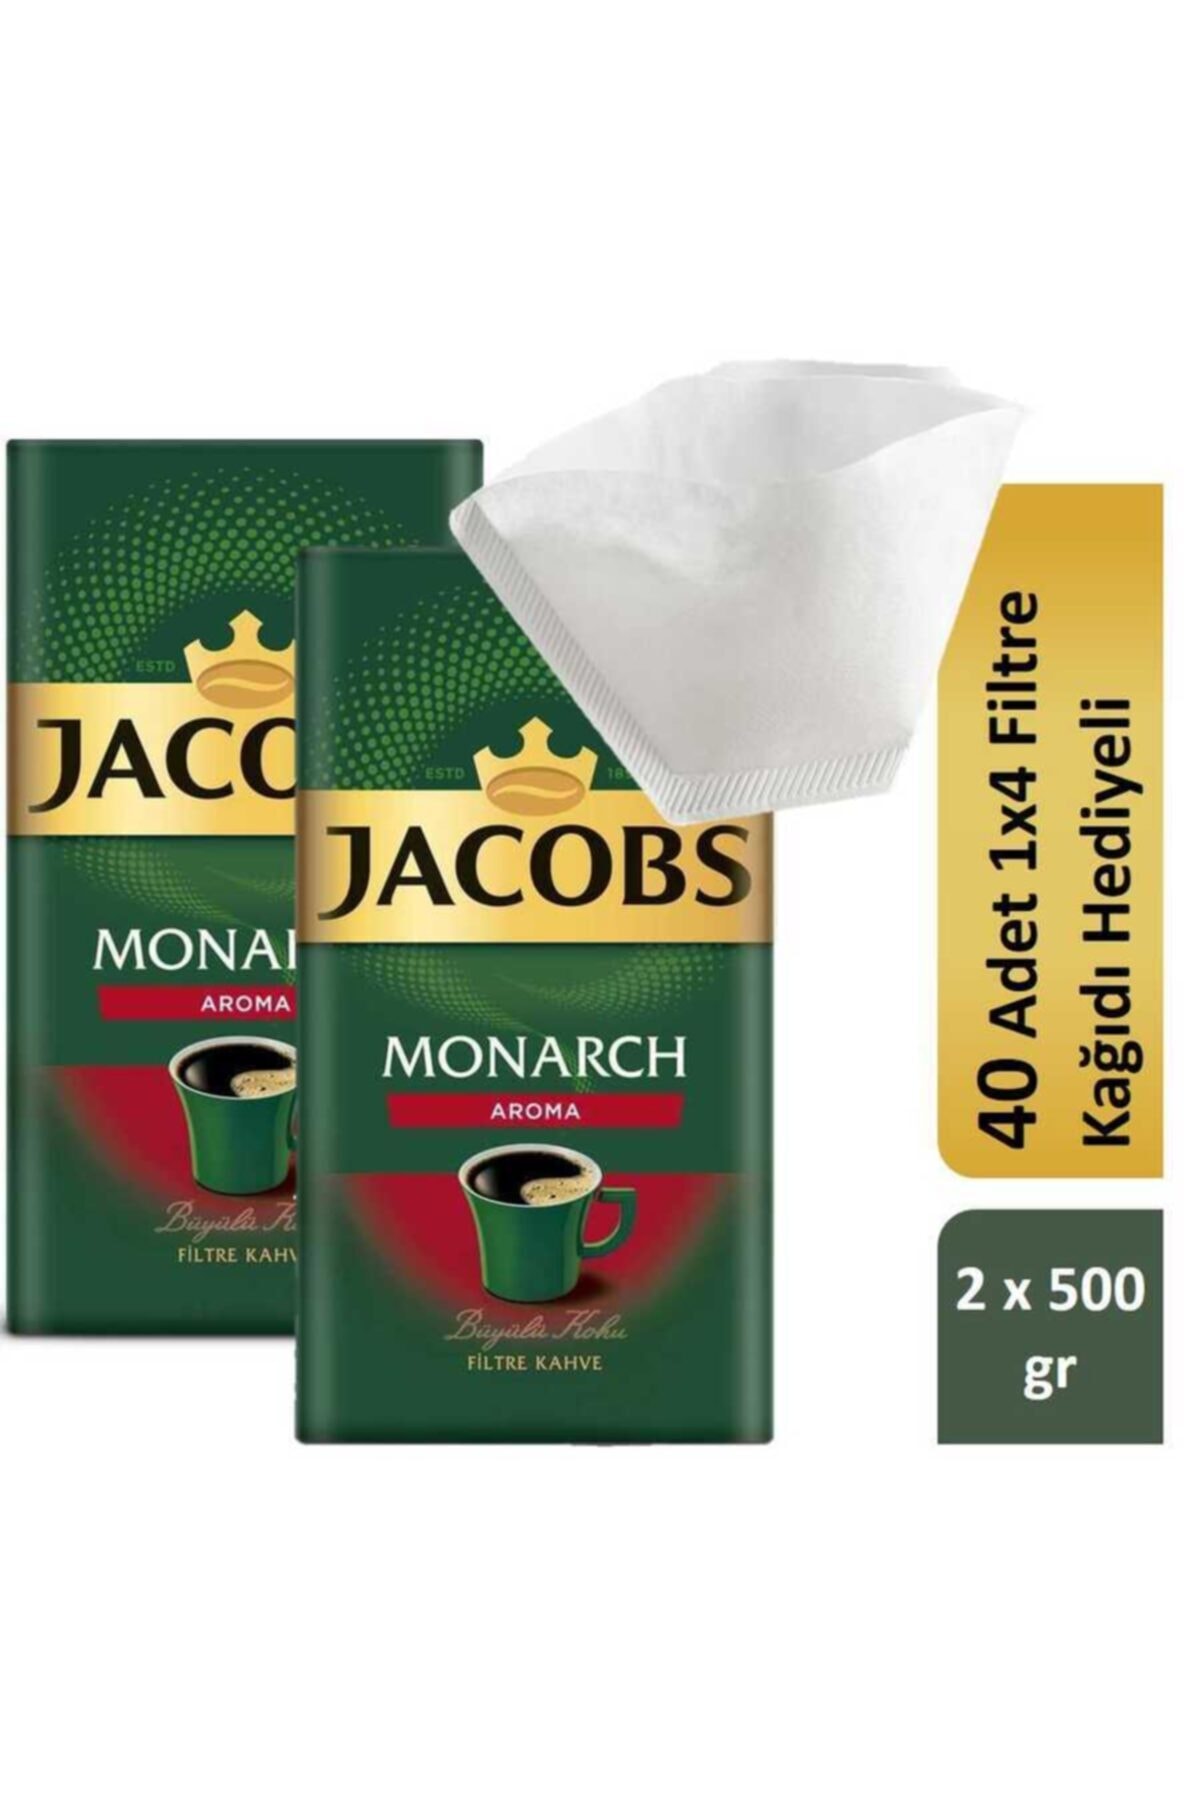 Jacobs Monarch Aromalı Filtre Kahve Filtre Kağıdı Hediyeli 2 X 500 gr